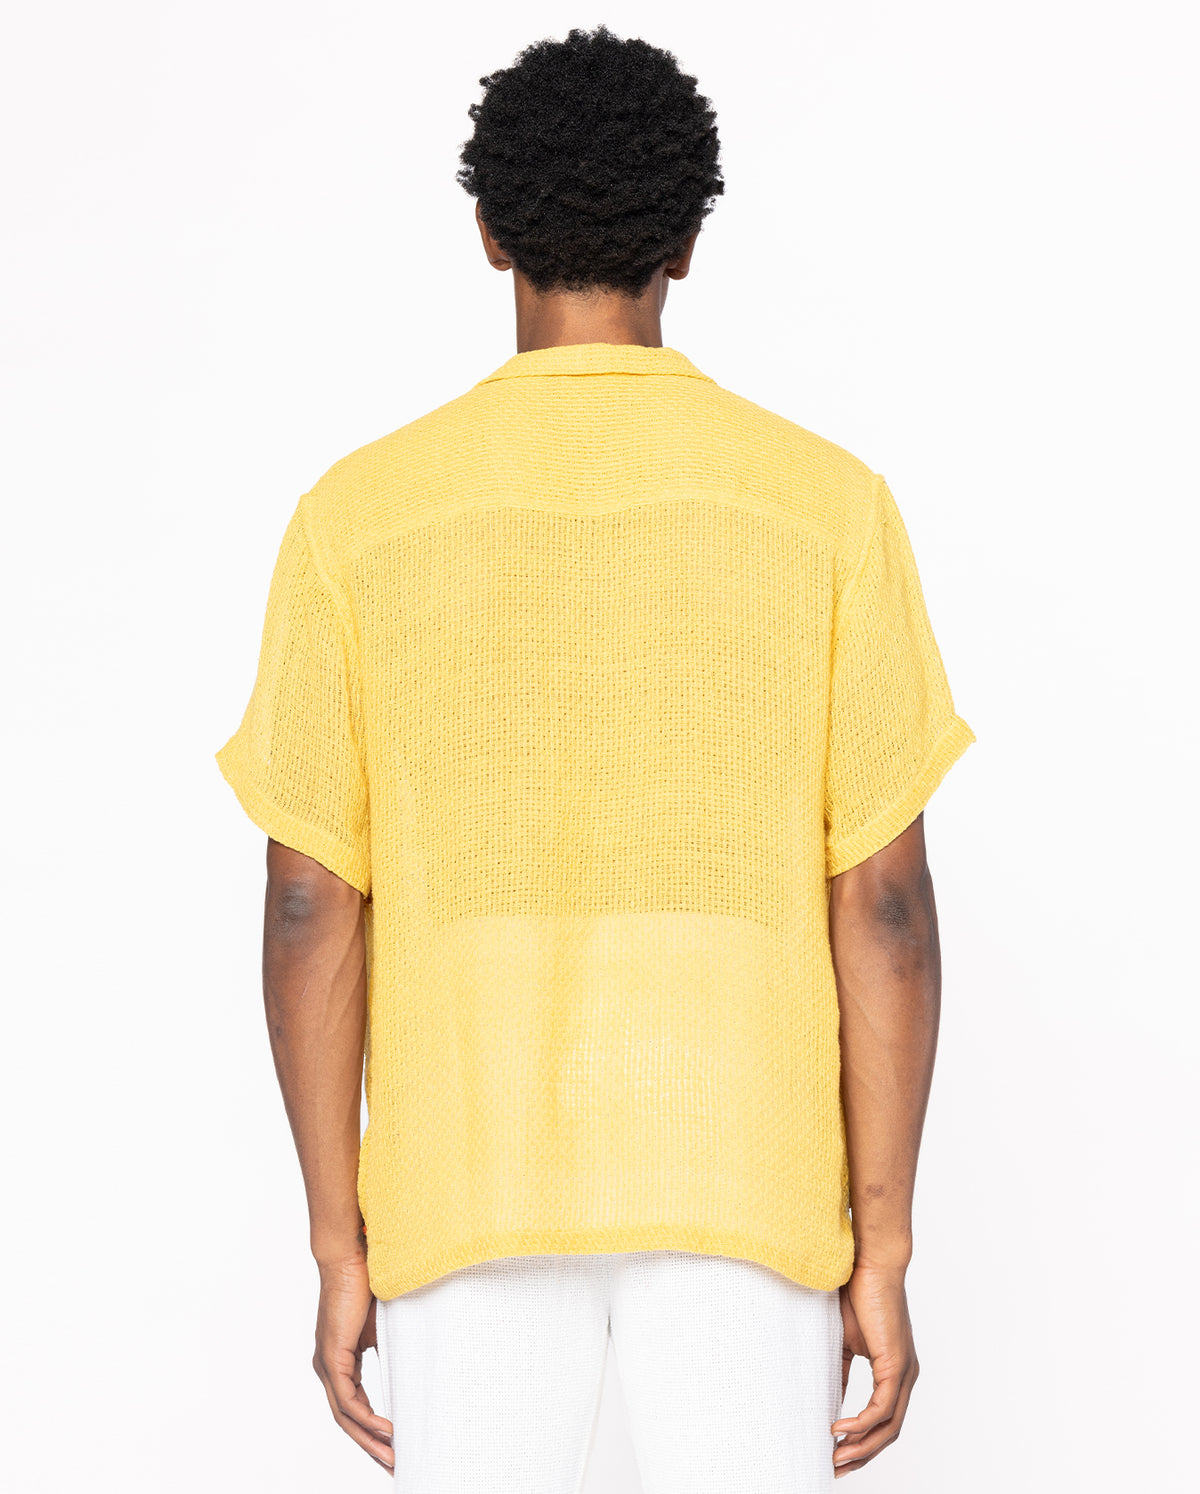 Crochet Flower Shirt - Yellow